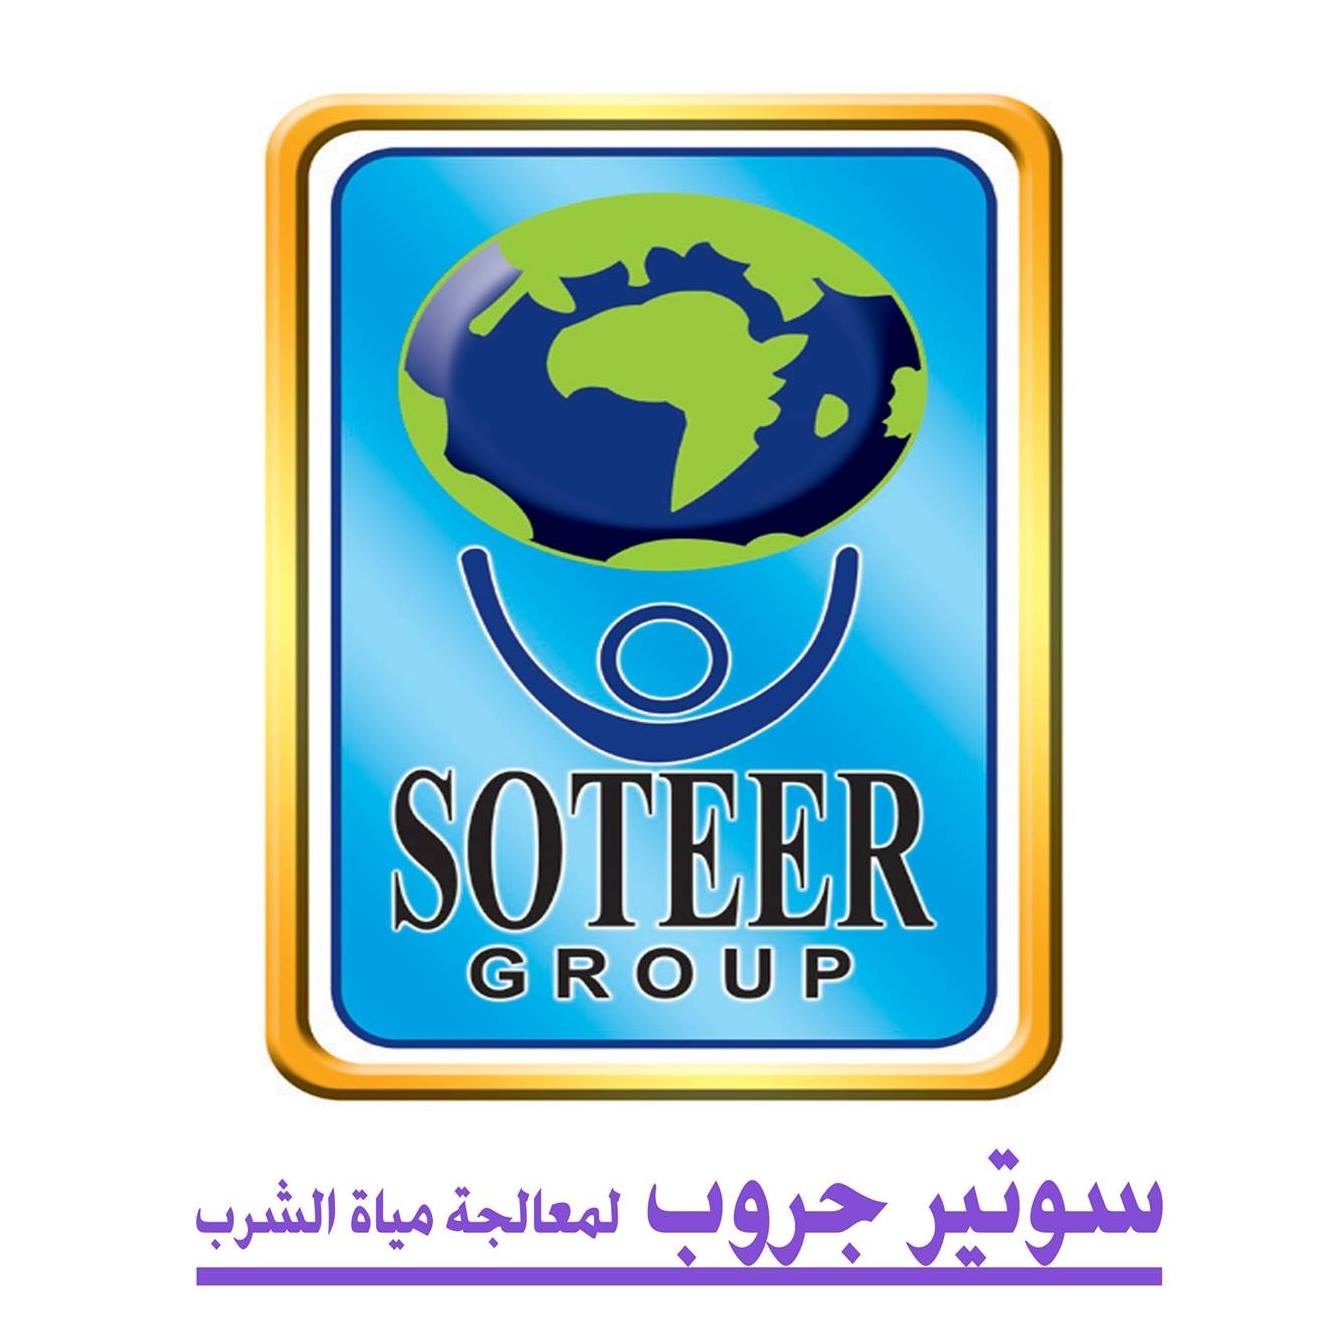 Soteer Group